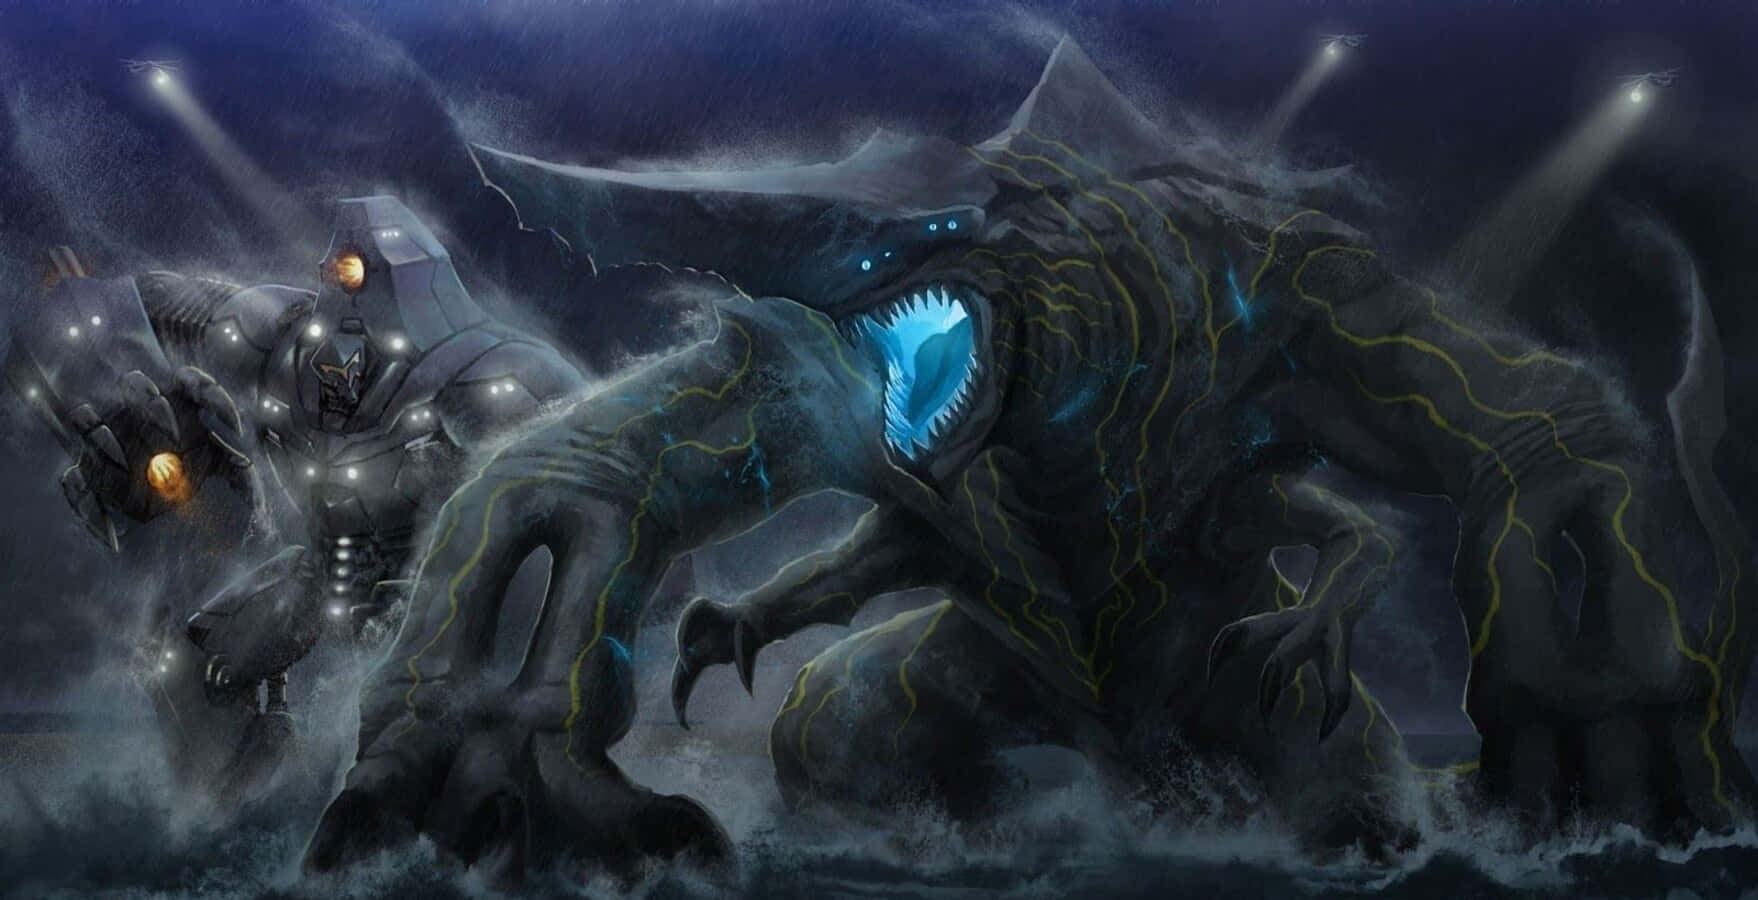 Massive Kaiju Monster in Battle Stance Wallpaper